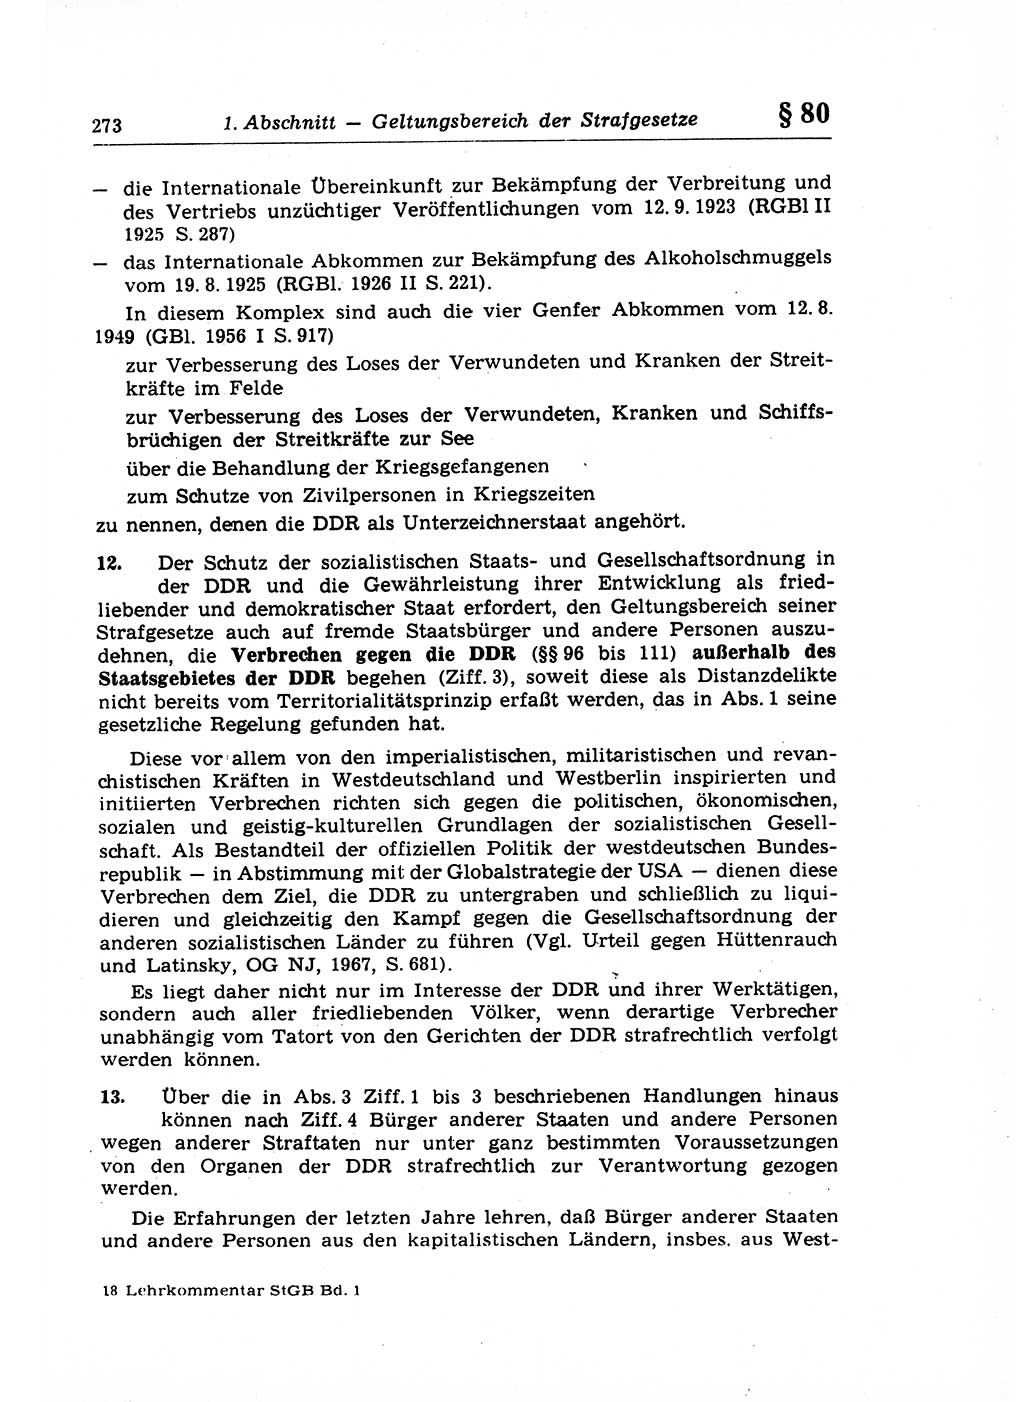 Strafrecht der Deutschen Demokratischen Republik (DDR), Lehrkommentar zum Strafgesetzbuch (StGB), Allgemeiner Teil 1969, Seite 273 (Strafr. DDR Lehrkomm. StGB AT 1969, S. 273)